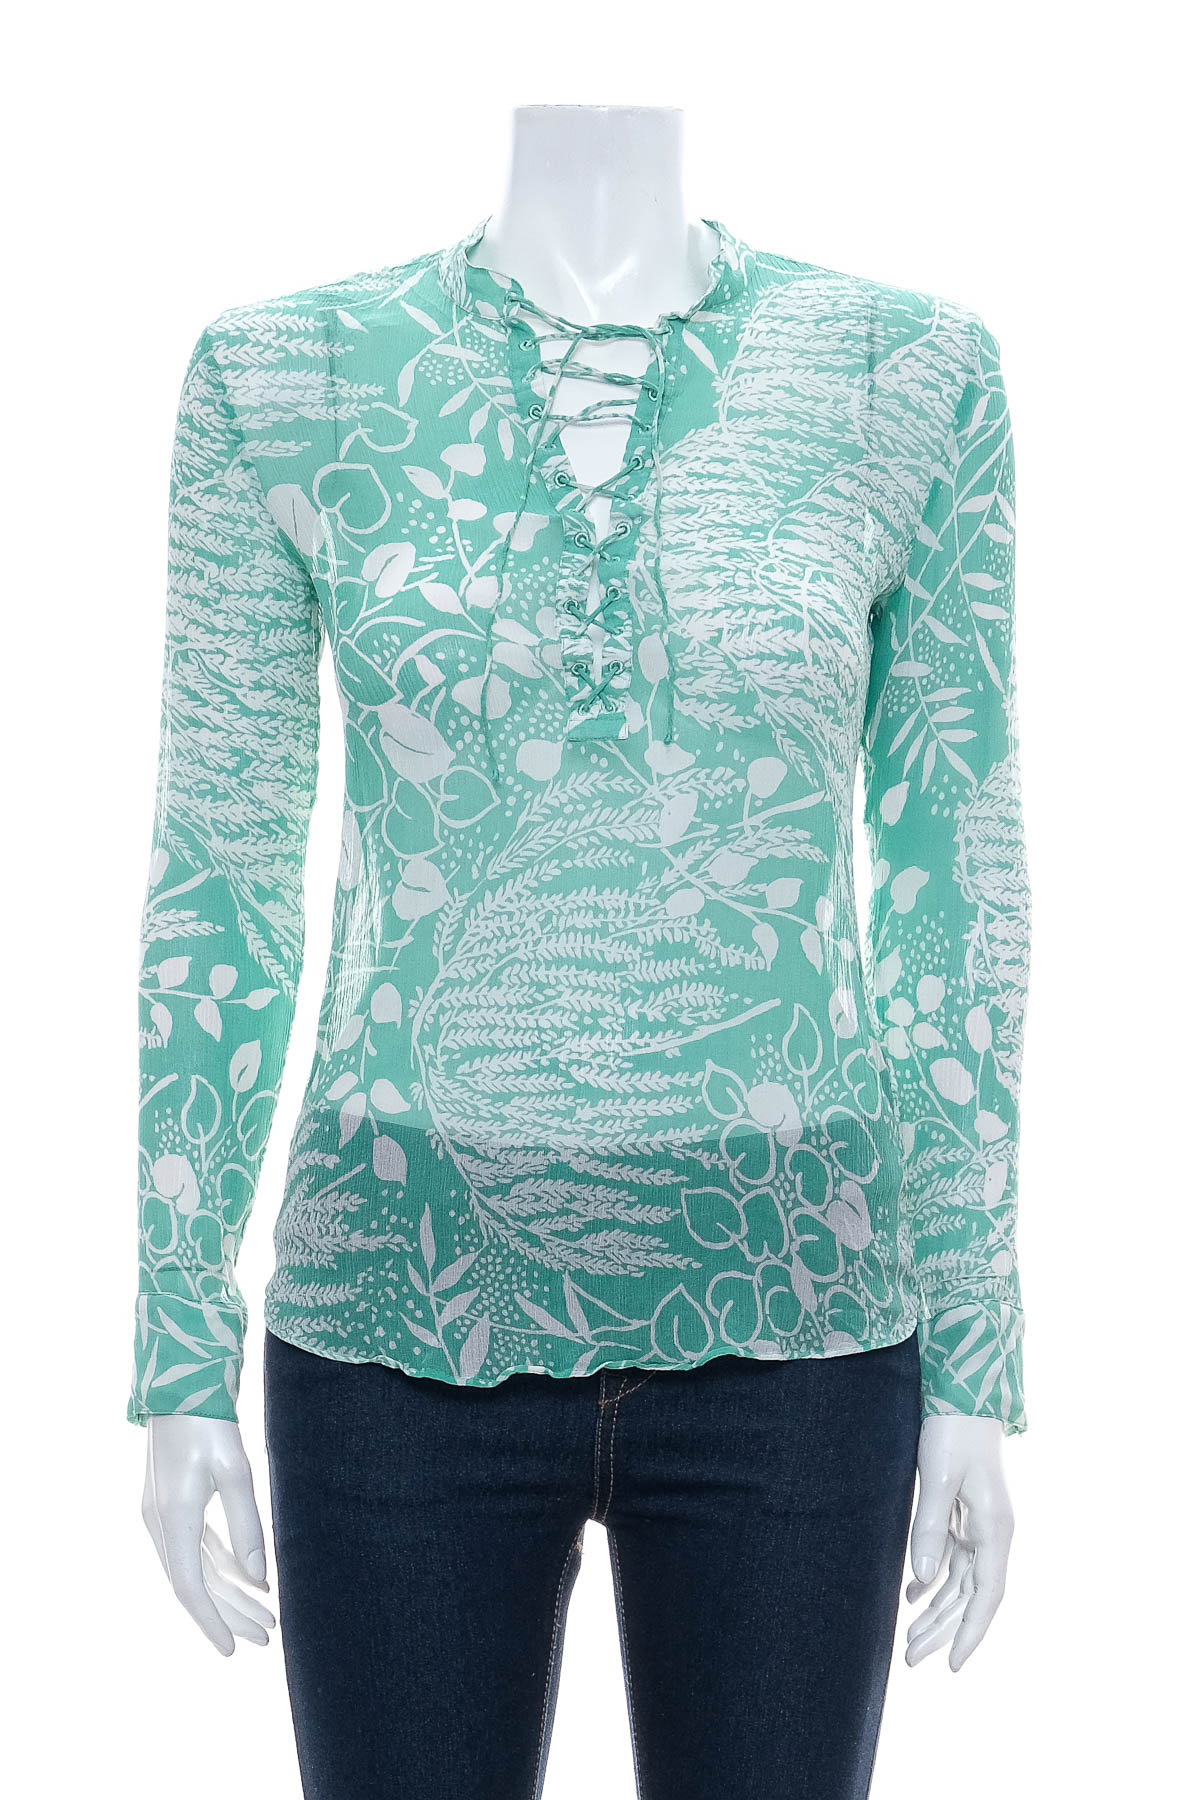 Γυναικείо πουκάμισο - H&M Spring Collection 2014 - 0